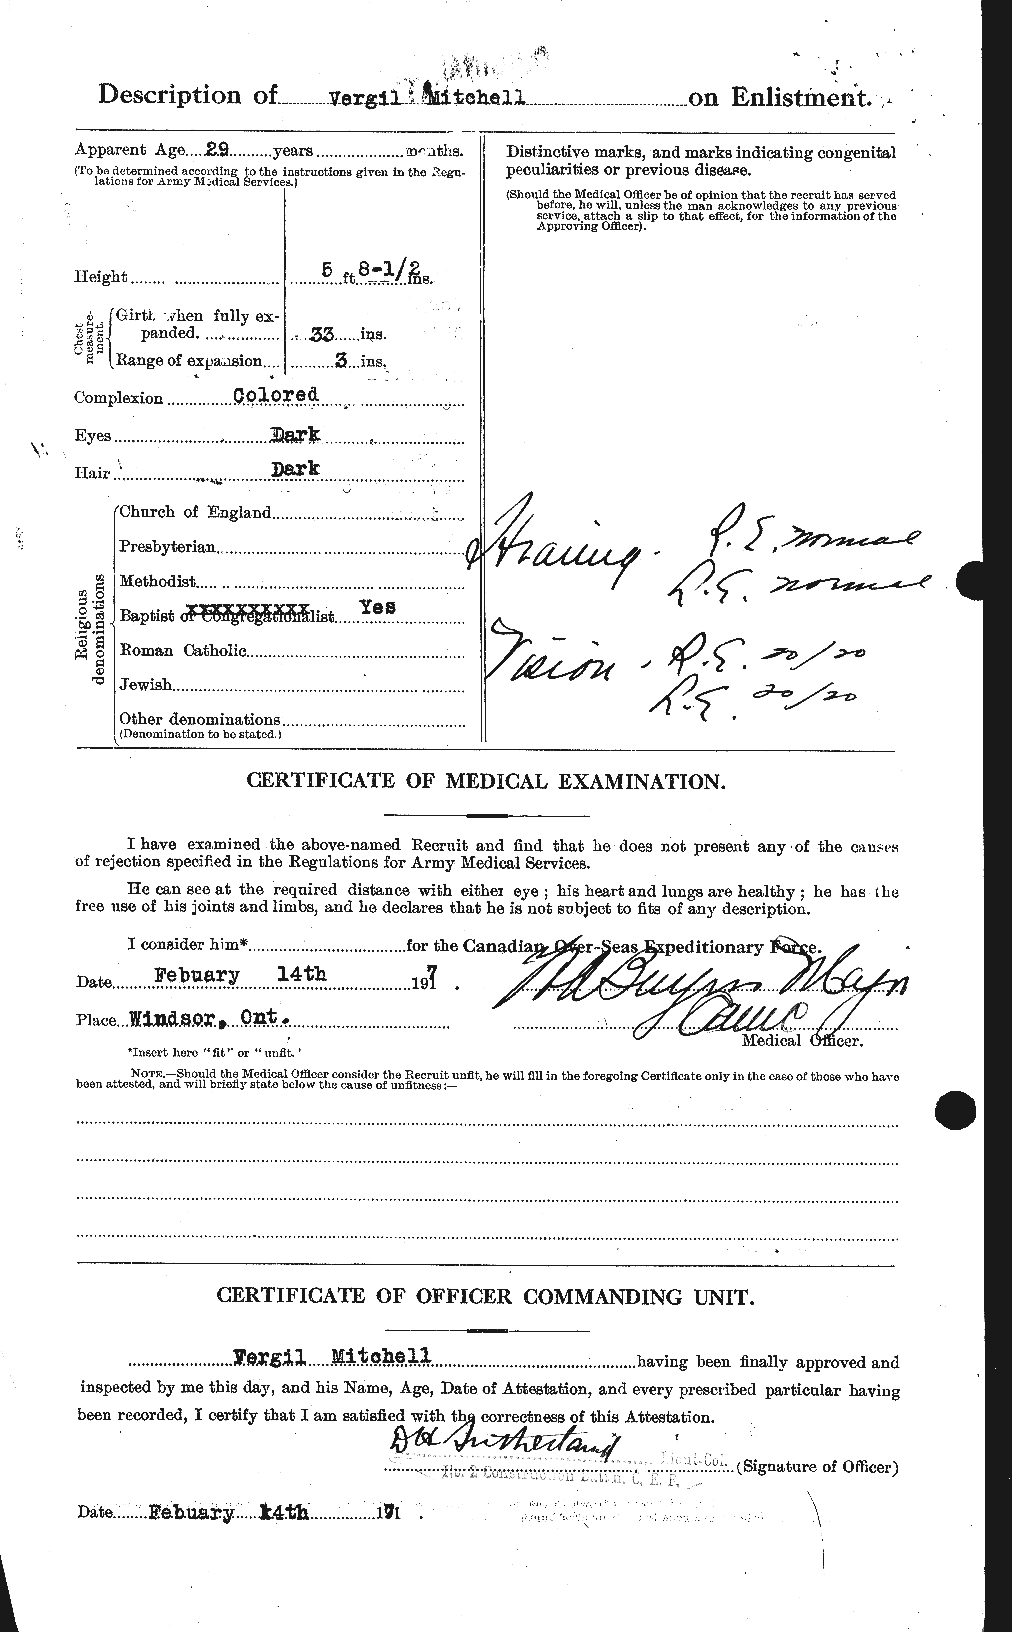 Dossiers du Personnel de la Première Guerre mondiale - CEC 499981b